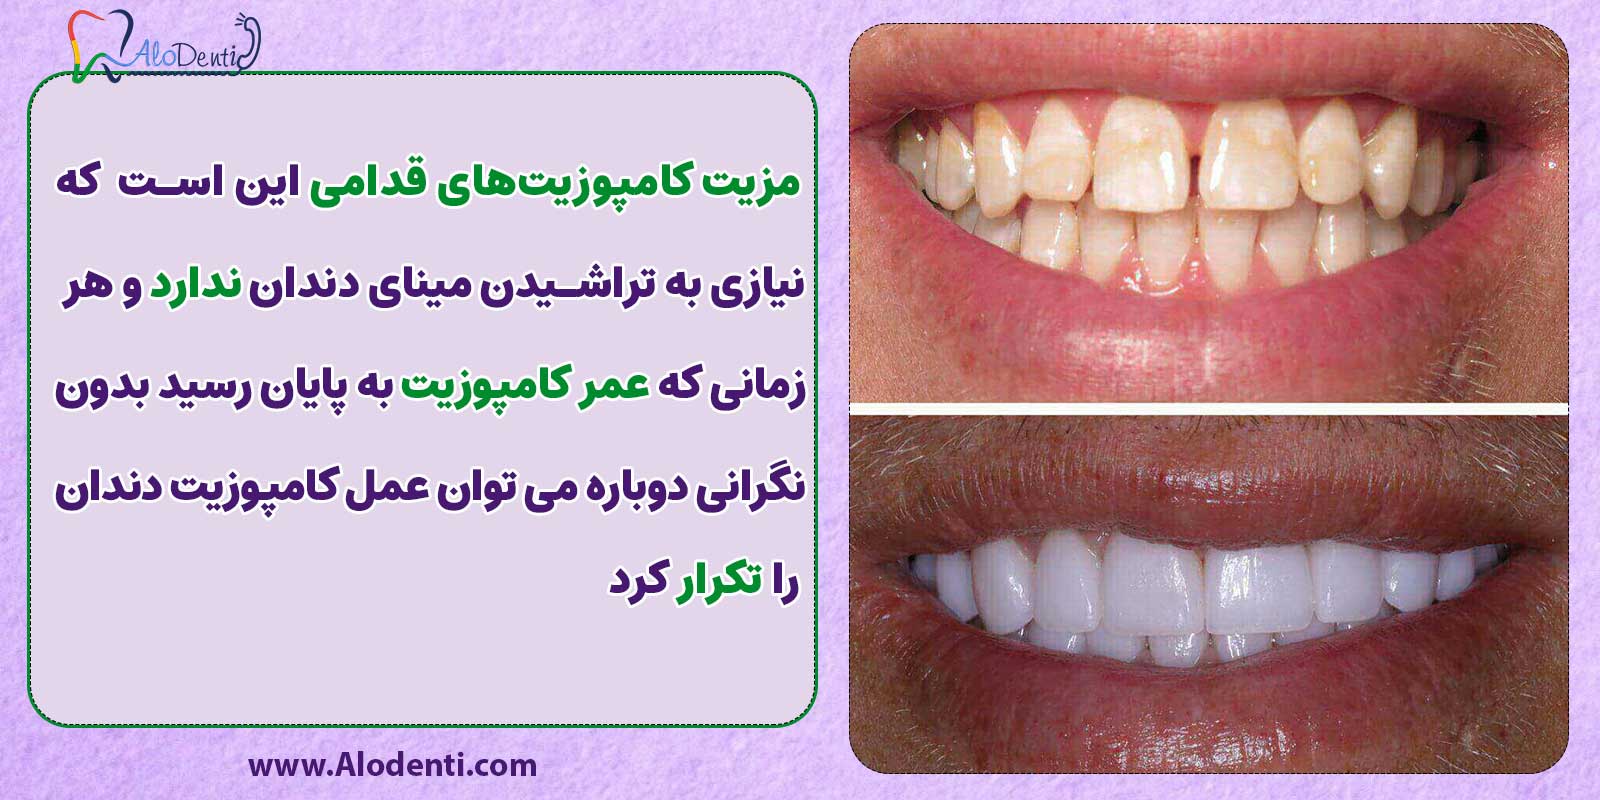 انواع کامپوزیت دندان: مزیت کامپوزیت های قدامی